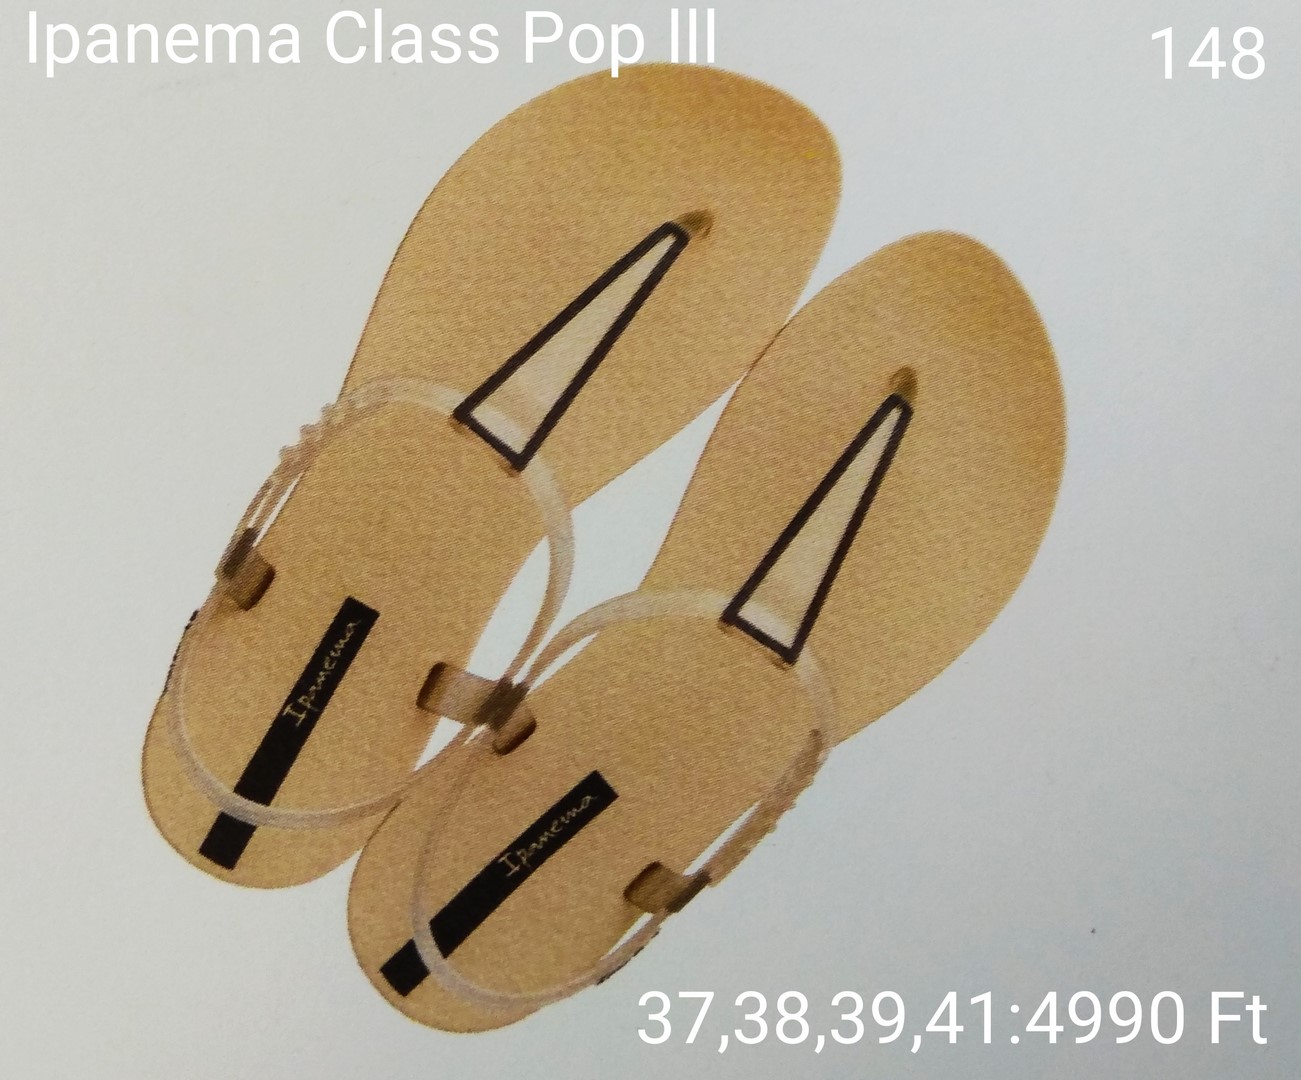 Ipanema Class Pop lll